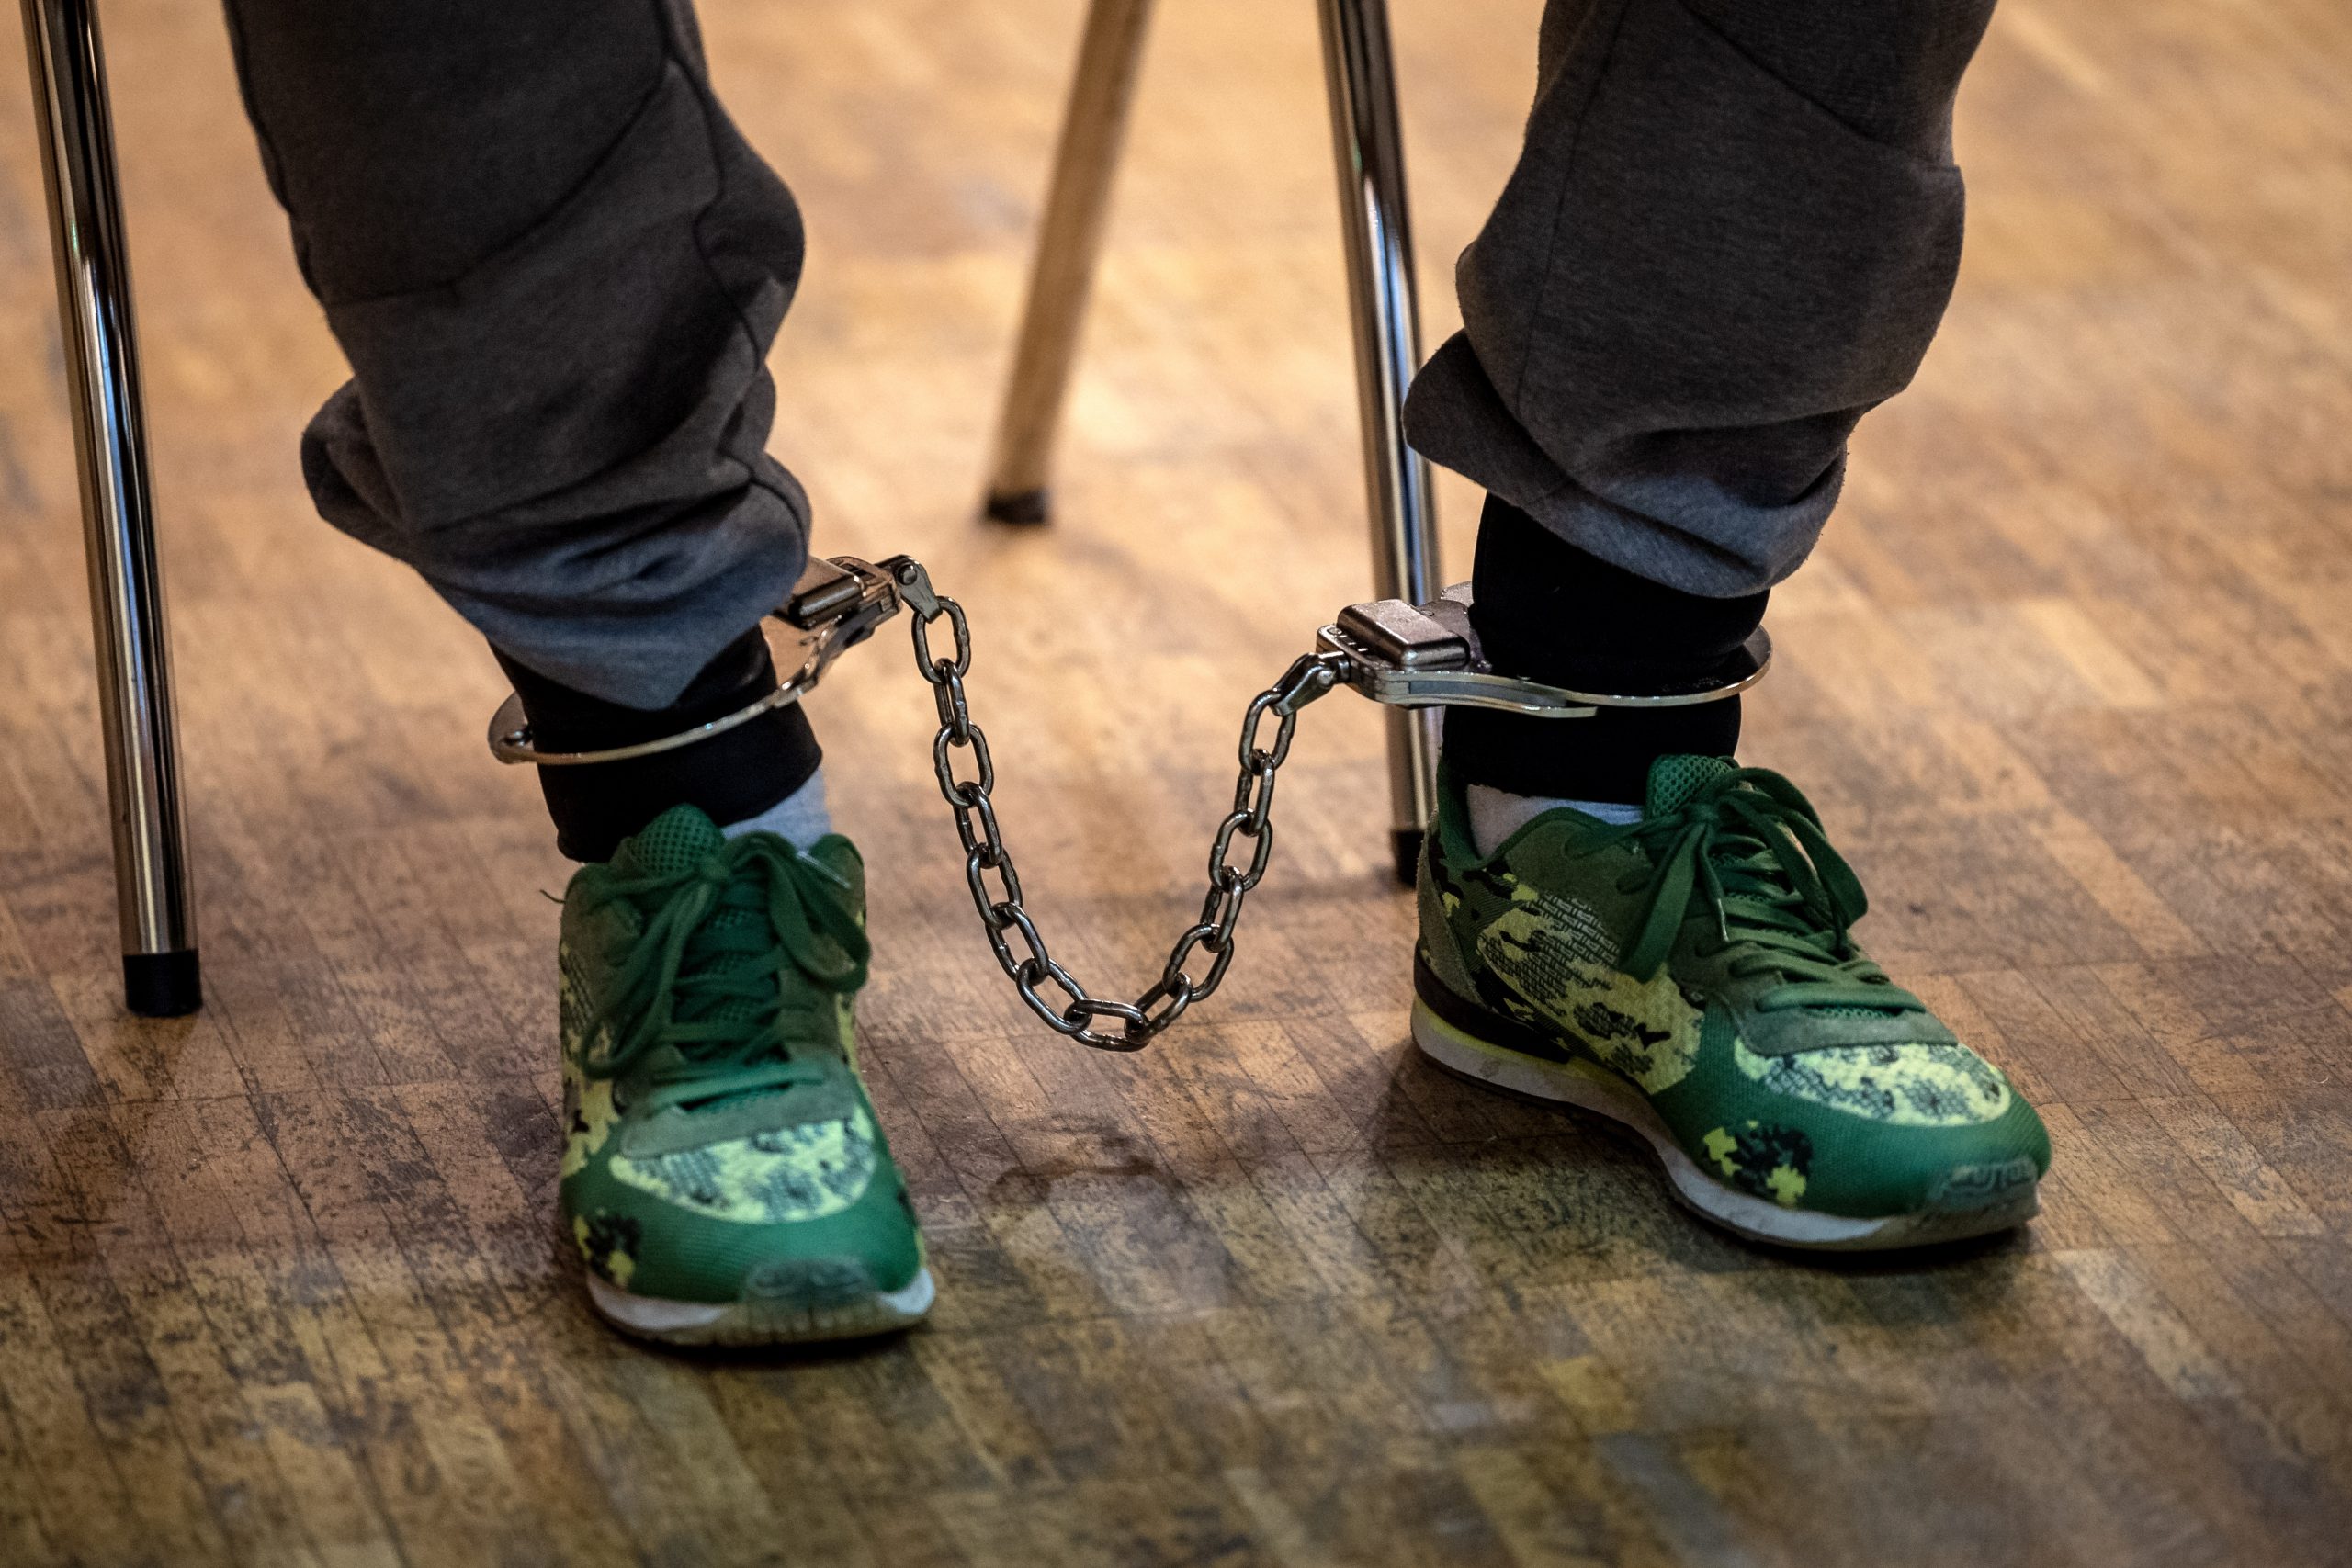 Einer der Angeklagten im Mordprozess sitzt mit Fußfesseln in der Stadthalle Verden (Archivbild vom 18. Oktober).